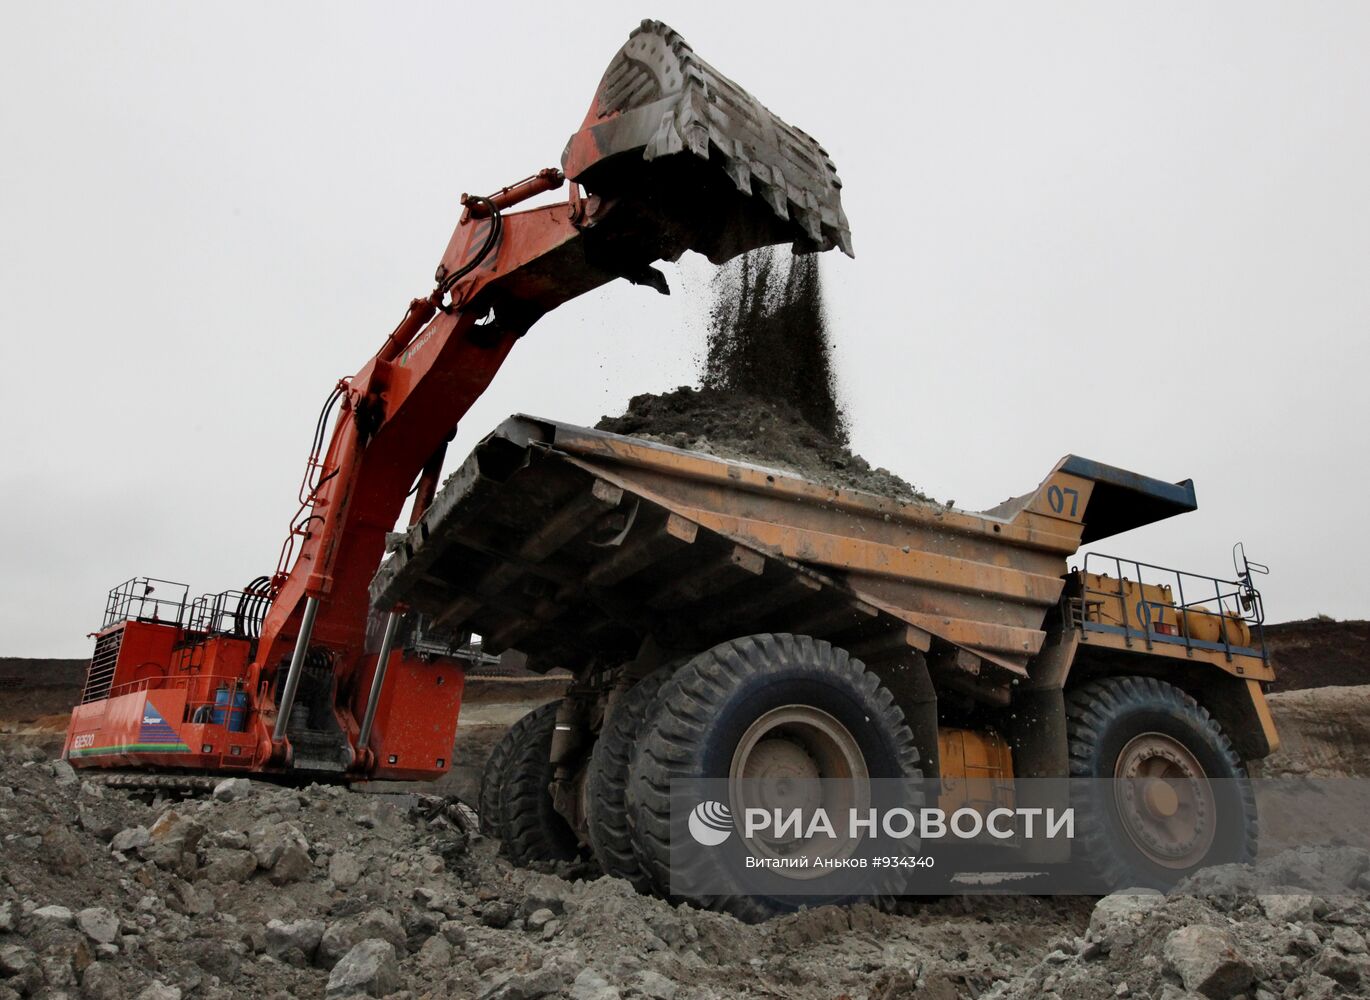 Добыча угля на "Новошахтинском" разрезоуправлении в Приморье